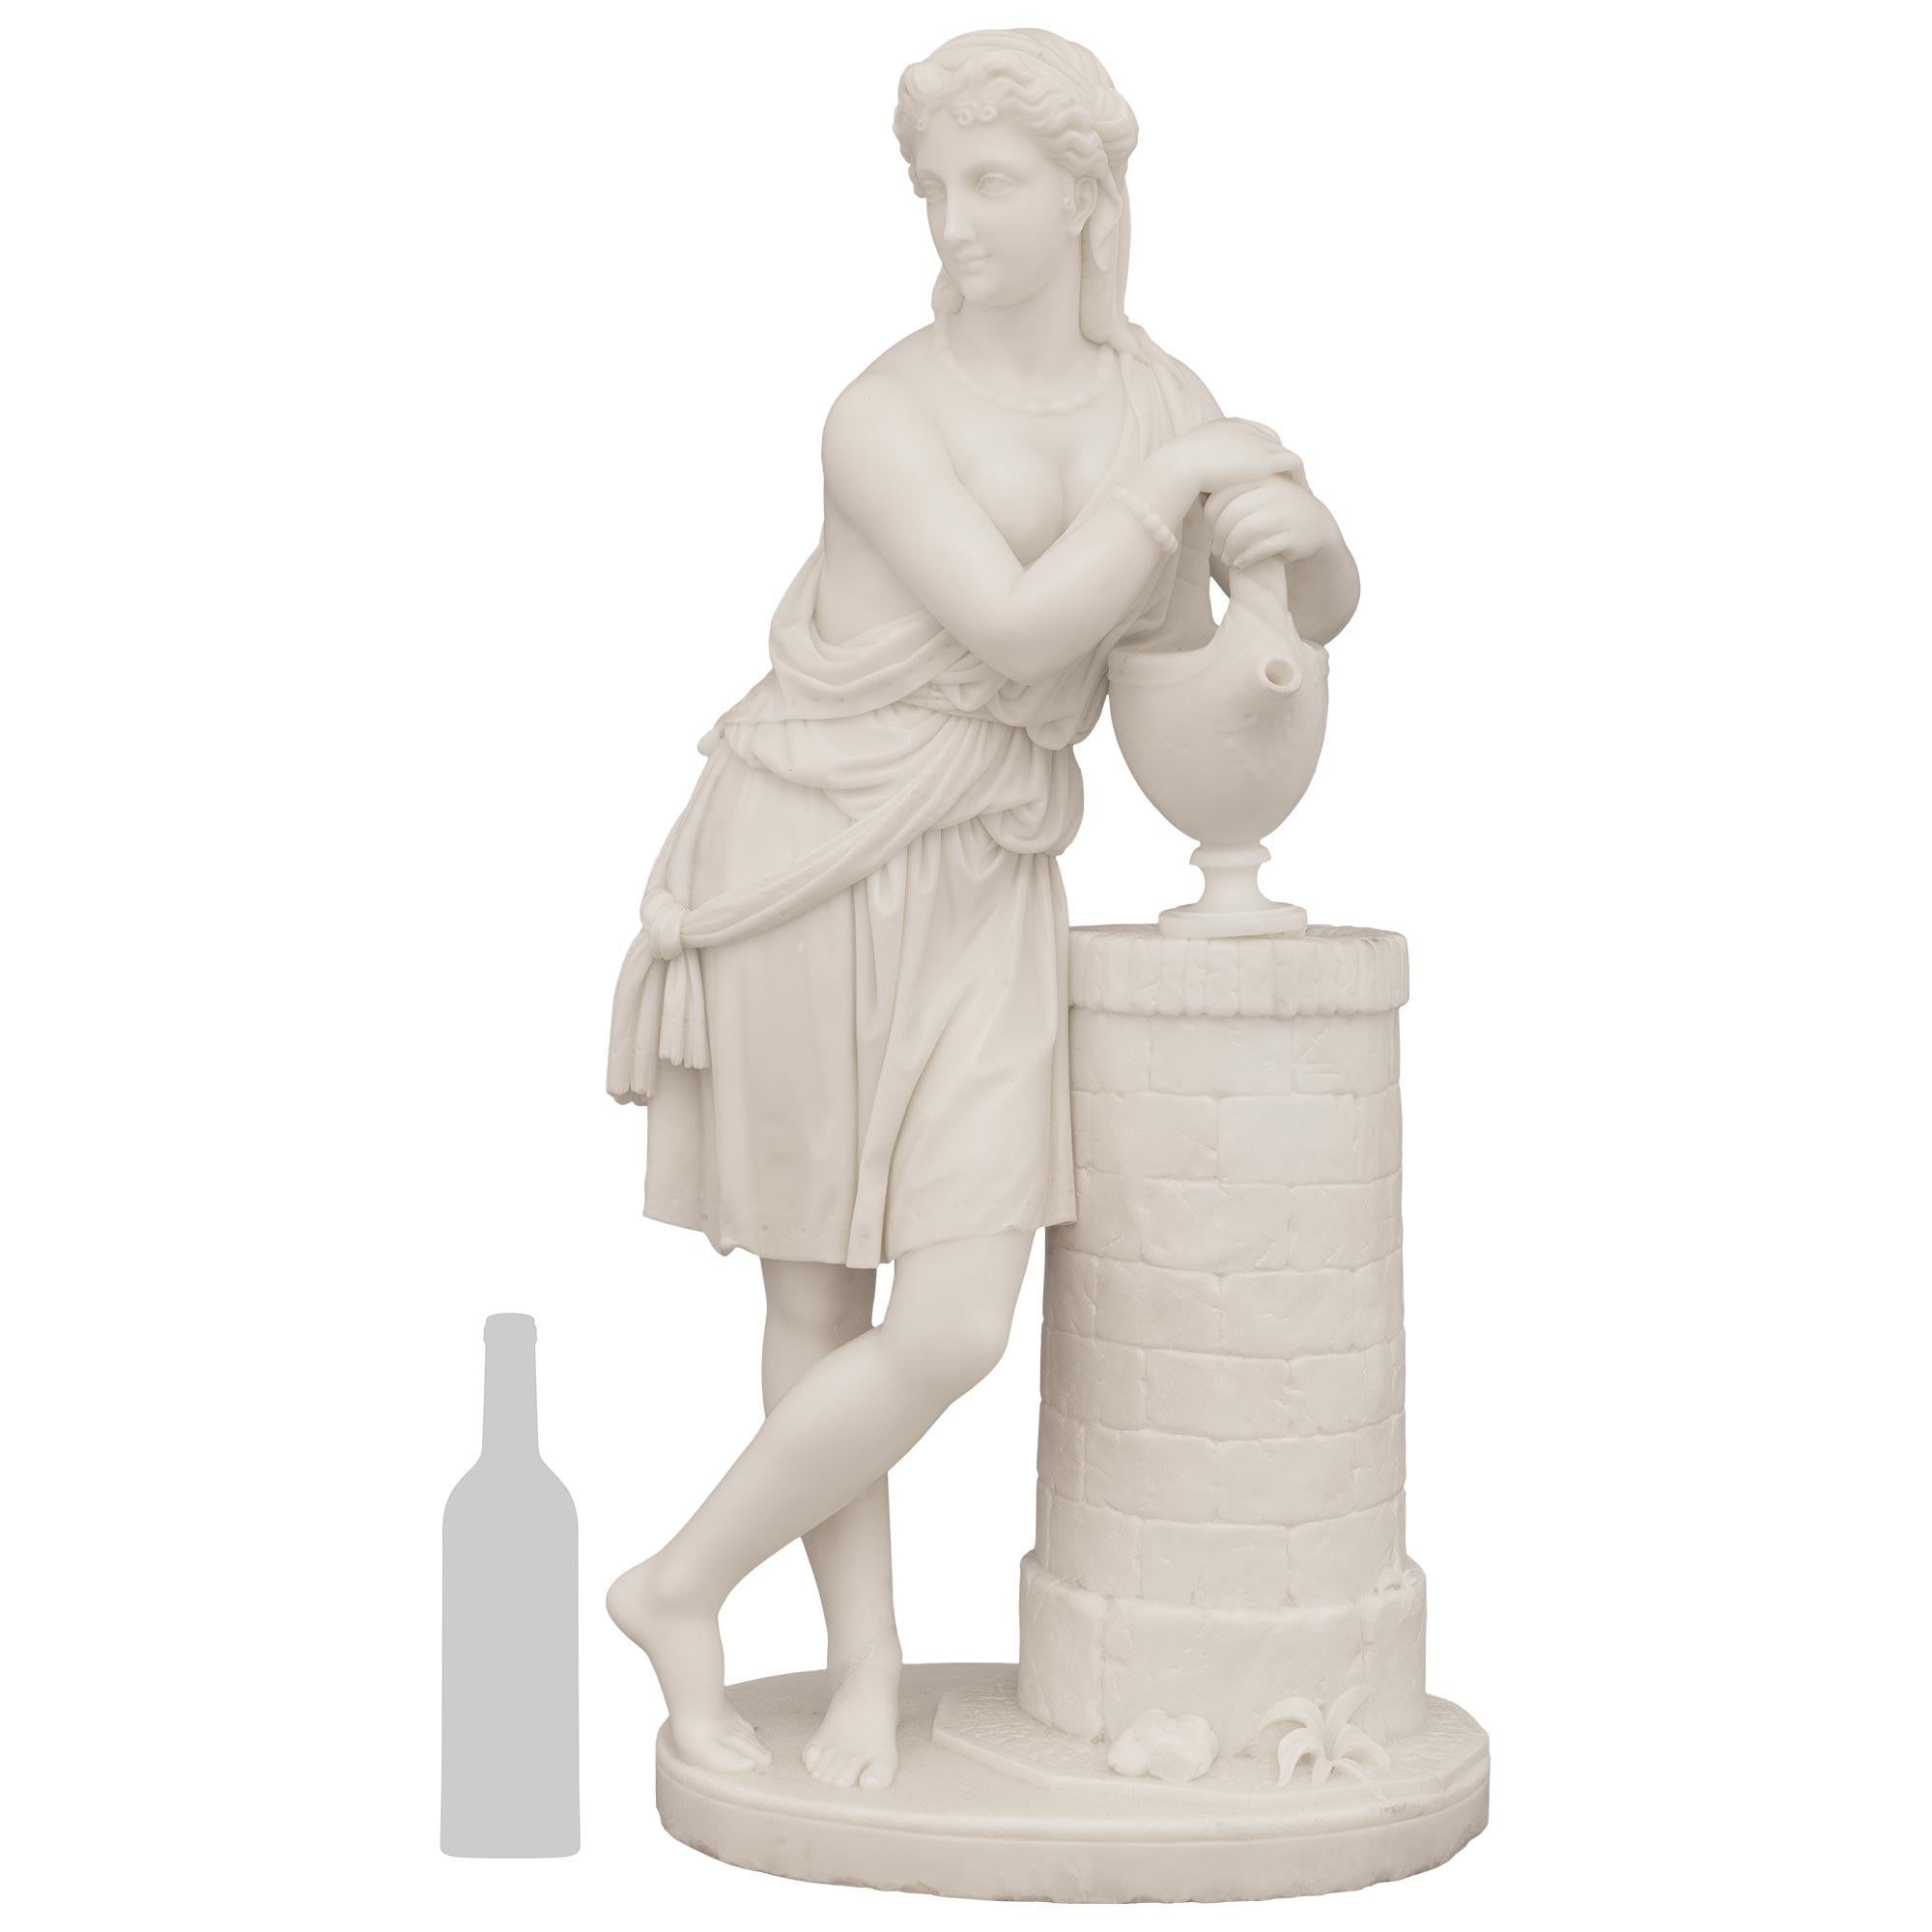 






Eine spektakuläre und sehr detaillierte italienische Statue aus weißem Carrara-Marmor aus dem frühen 19. Jahrhundert, die Rebecca am Brunnen darstellt, signiert von Carmelo Fontana (1775-1825). Rebecca steht stolz auf einem ovalen